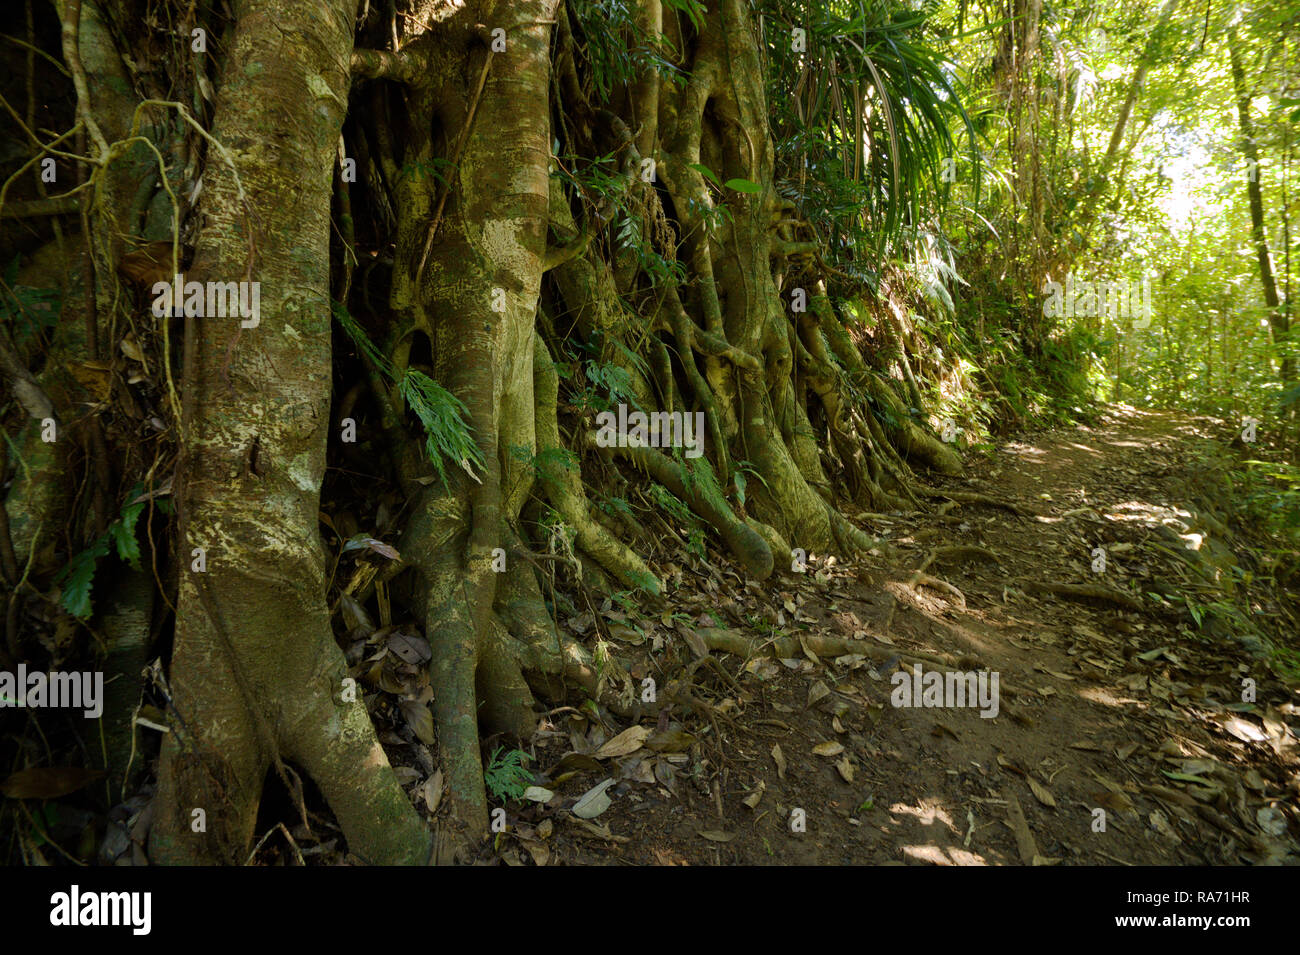 Feigenbaum am Rande eines Weges in die wunderschönen tropischen Regenwald des Wooroonooran National Park, North Queensland, Australien. Stockfoto